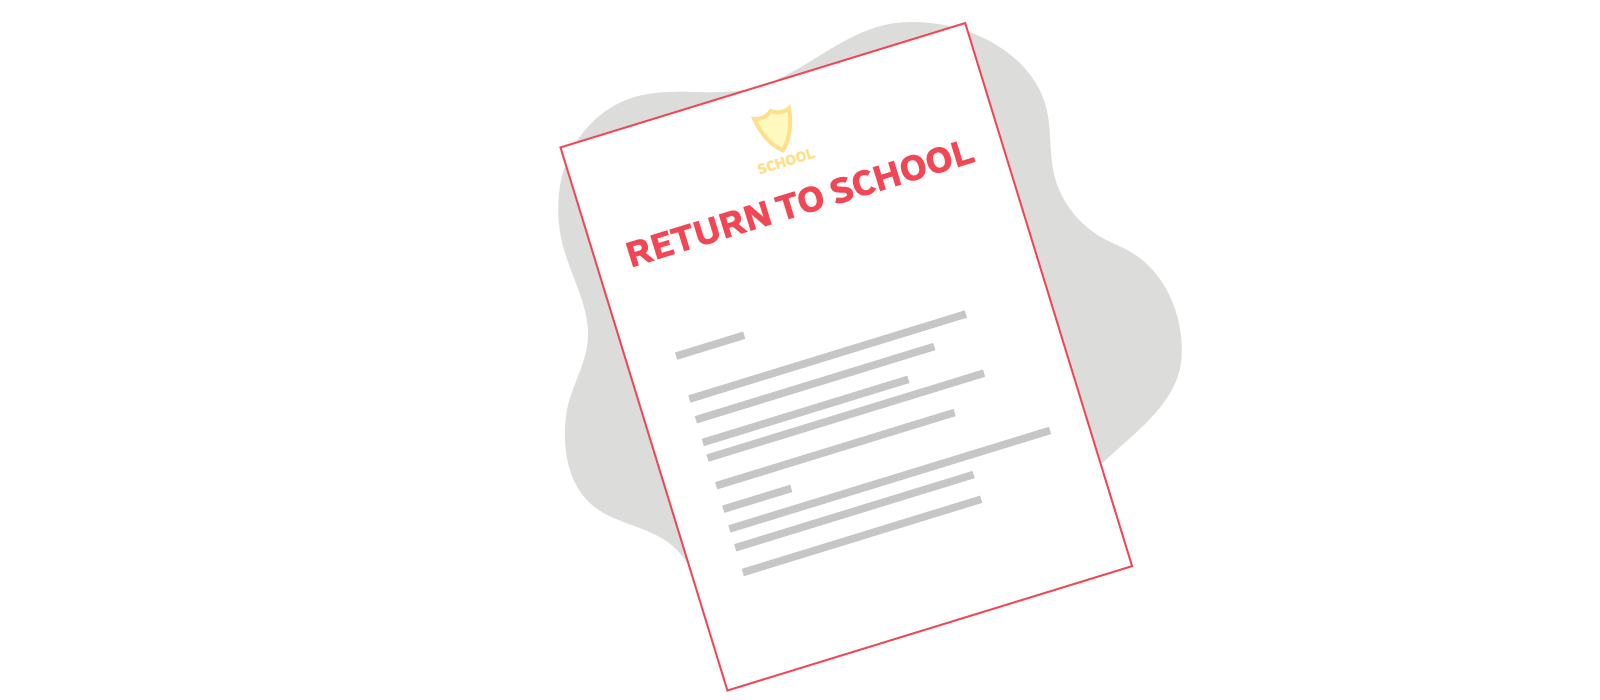 Return to school letter